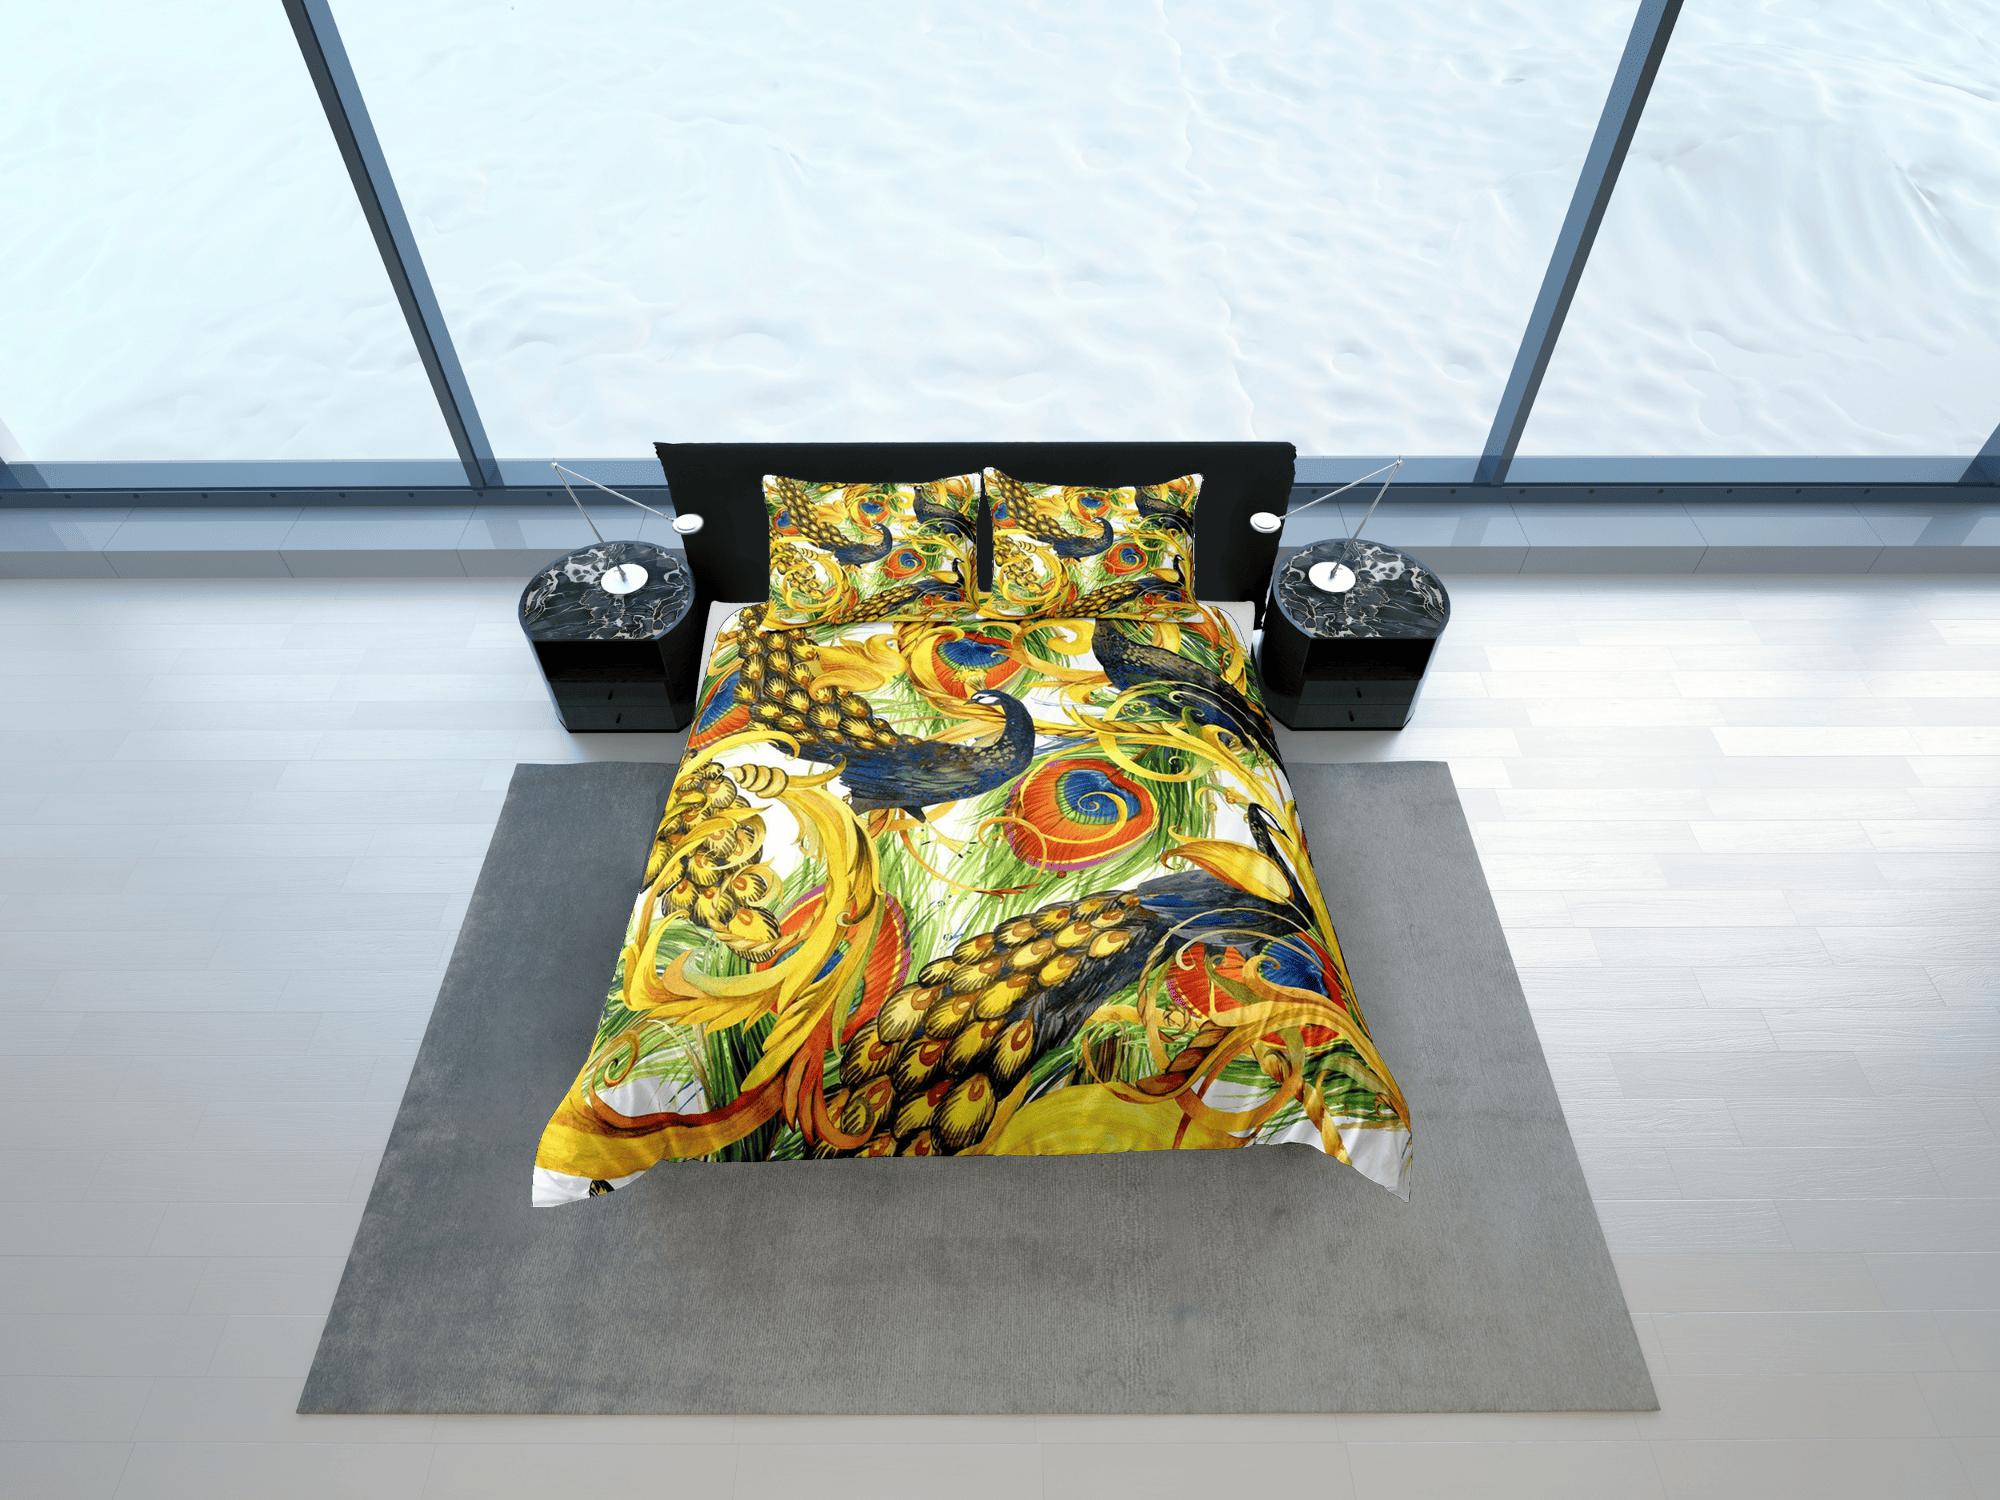 daintyduvet Golden peacock decor aesthetic bedding set full, luxury duvet cover queen, king, boho duvet, designer bedding, maximalist bedspread